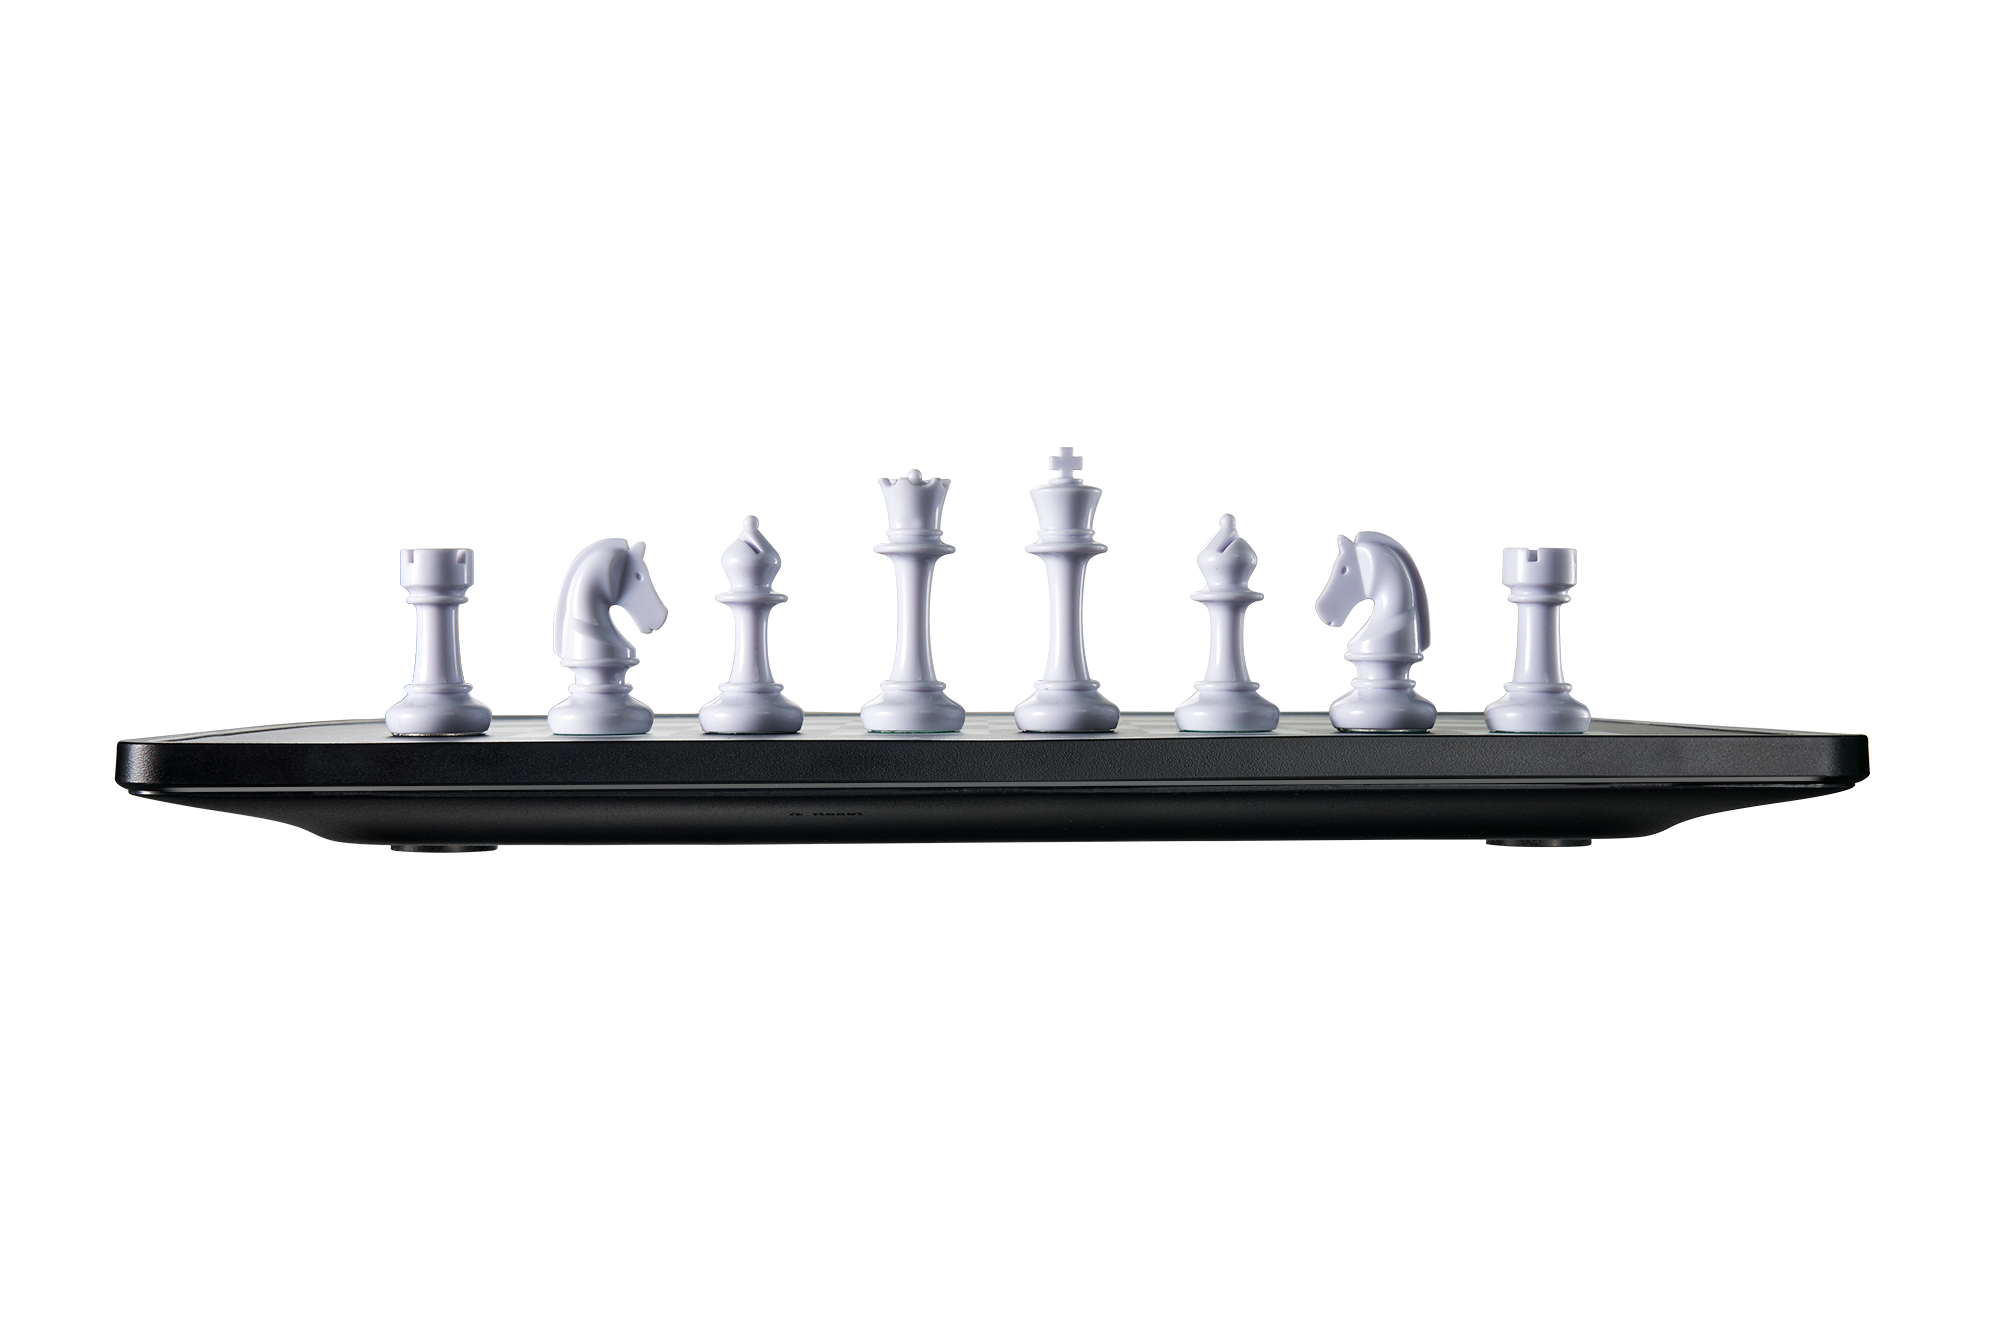 eONE Online Chess Board